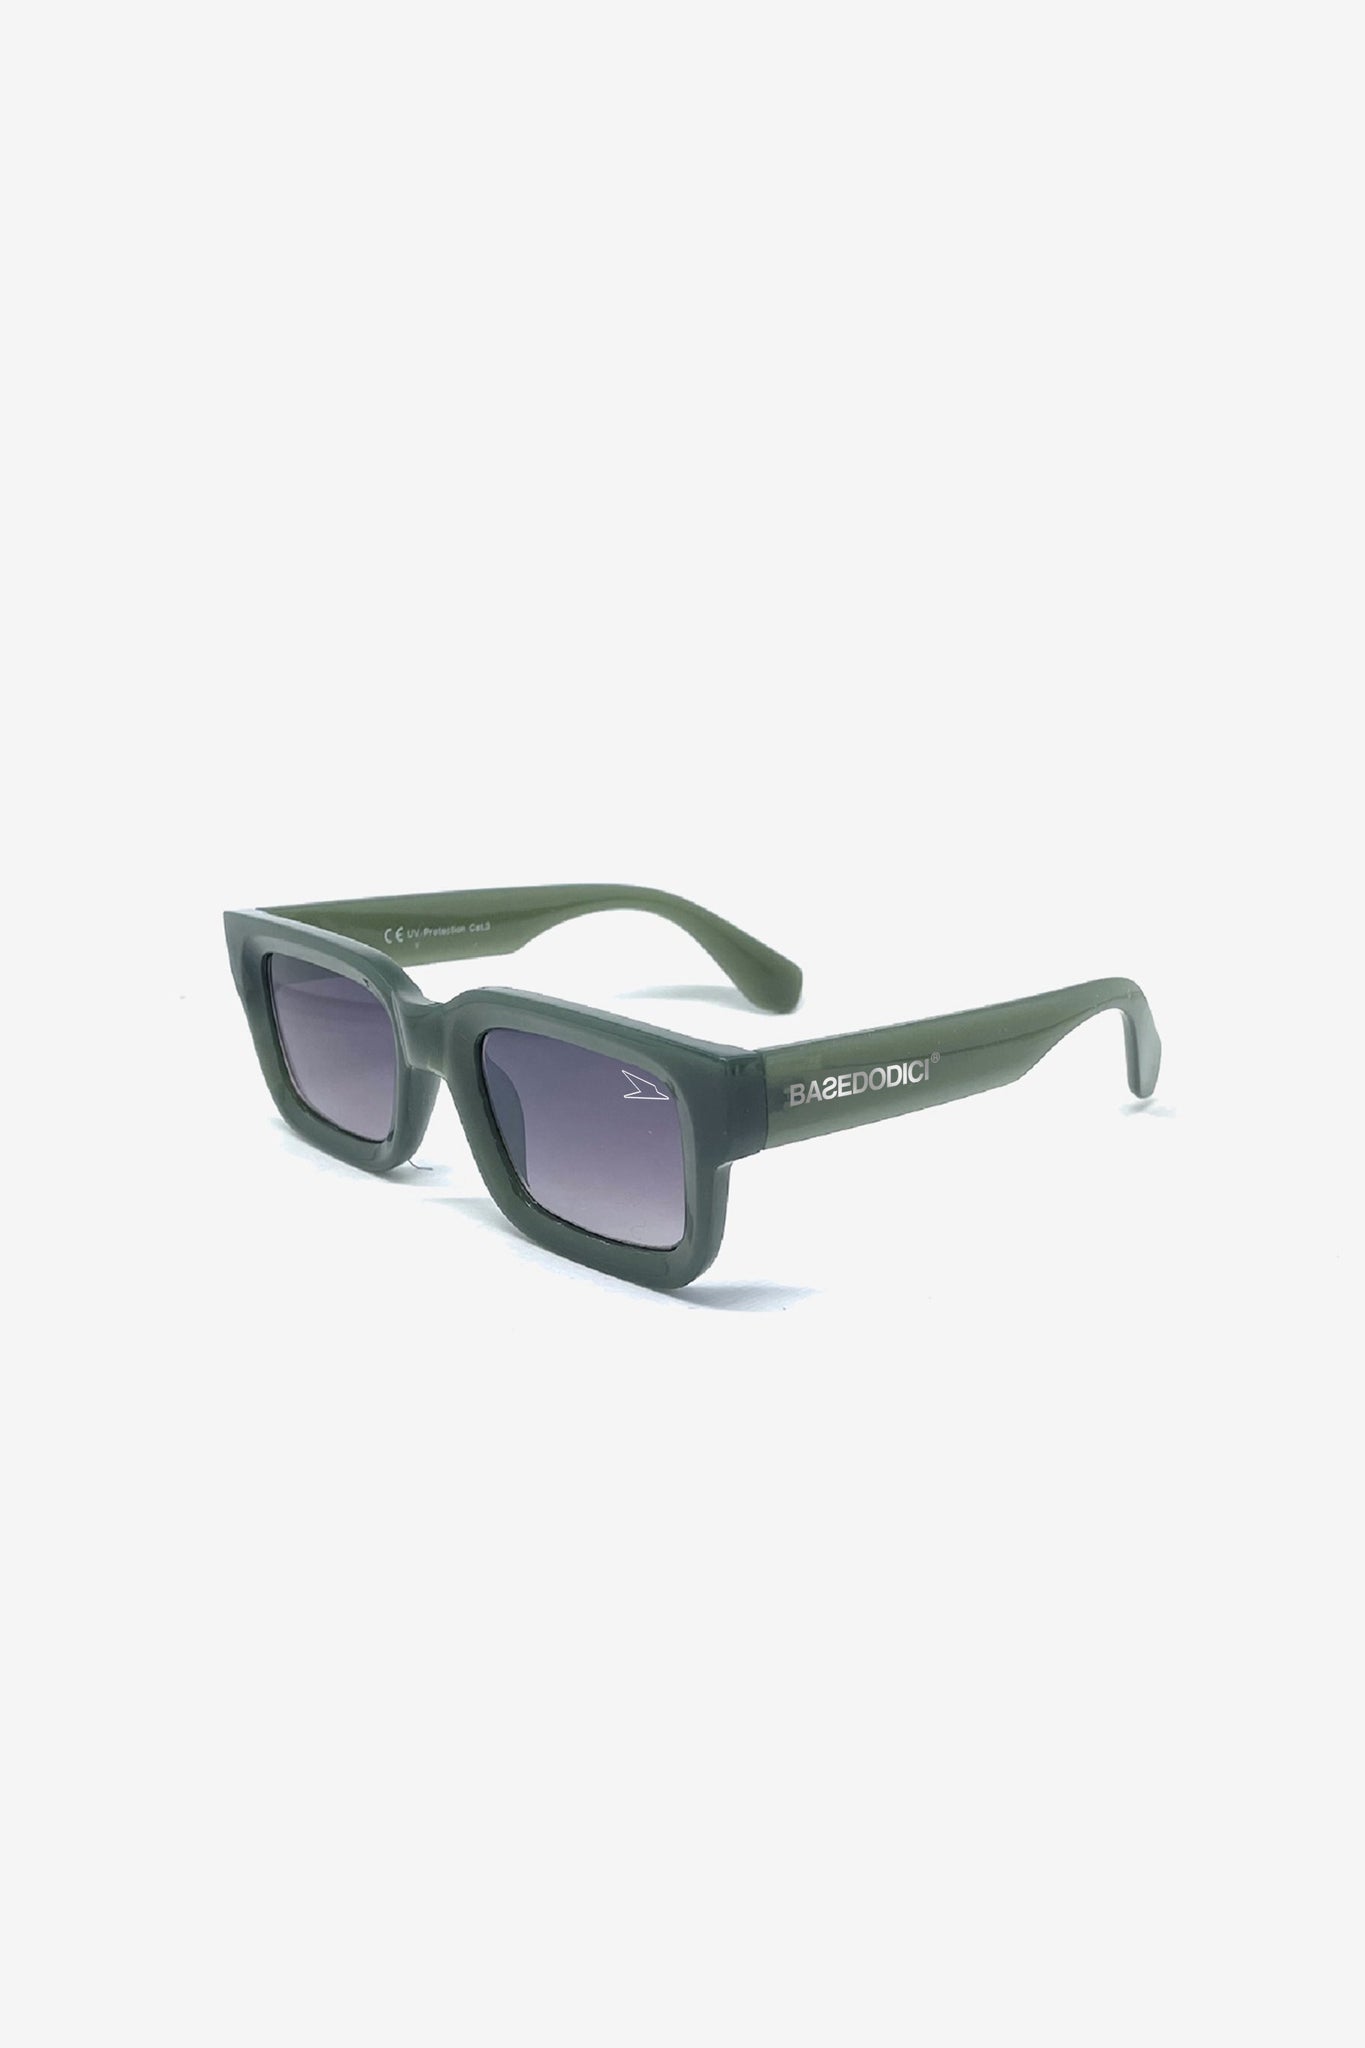 Sunglasses "RESORT" Bulldog Green/Smoke